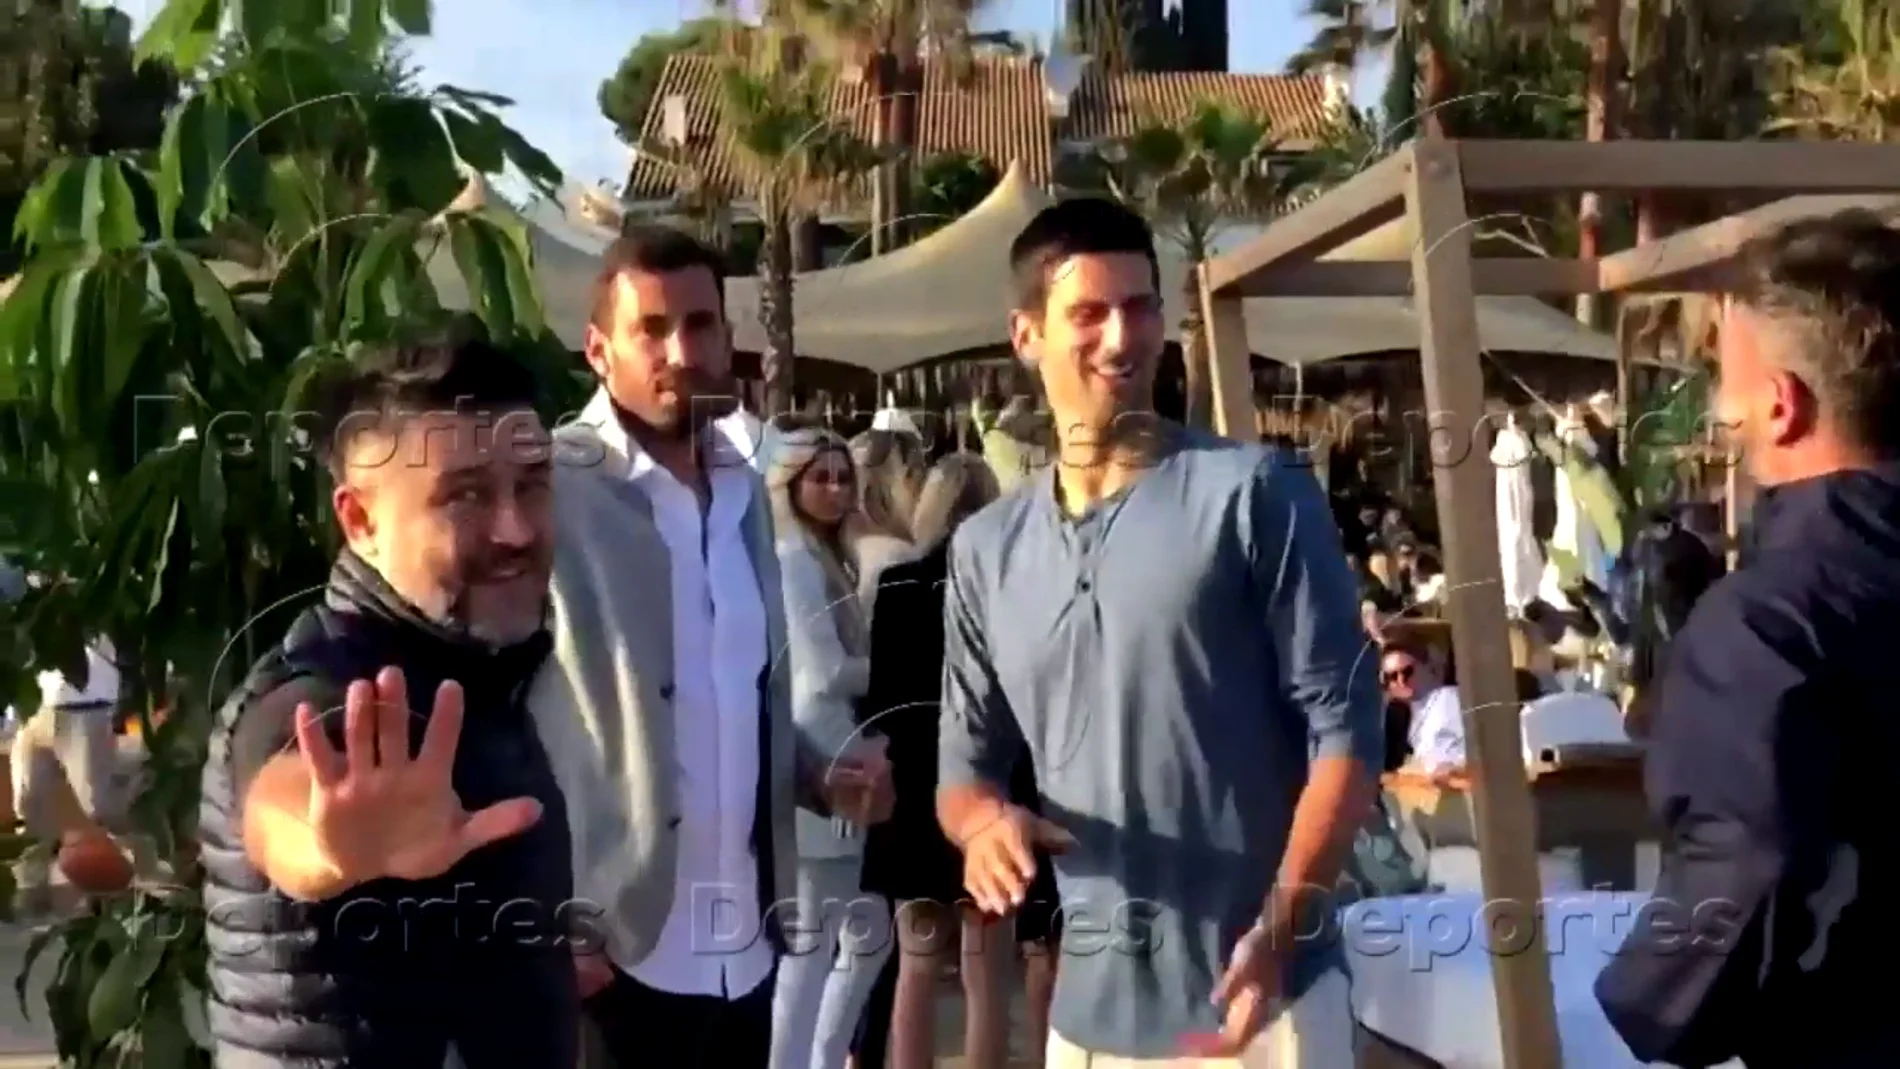 Exclusiva Antena 3 Deportes: El vídeo que demuestra que Djokovic mintió